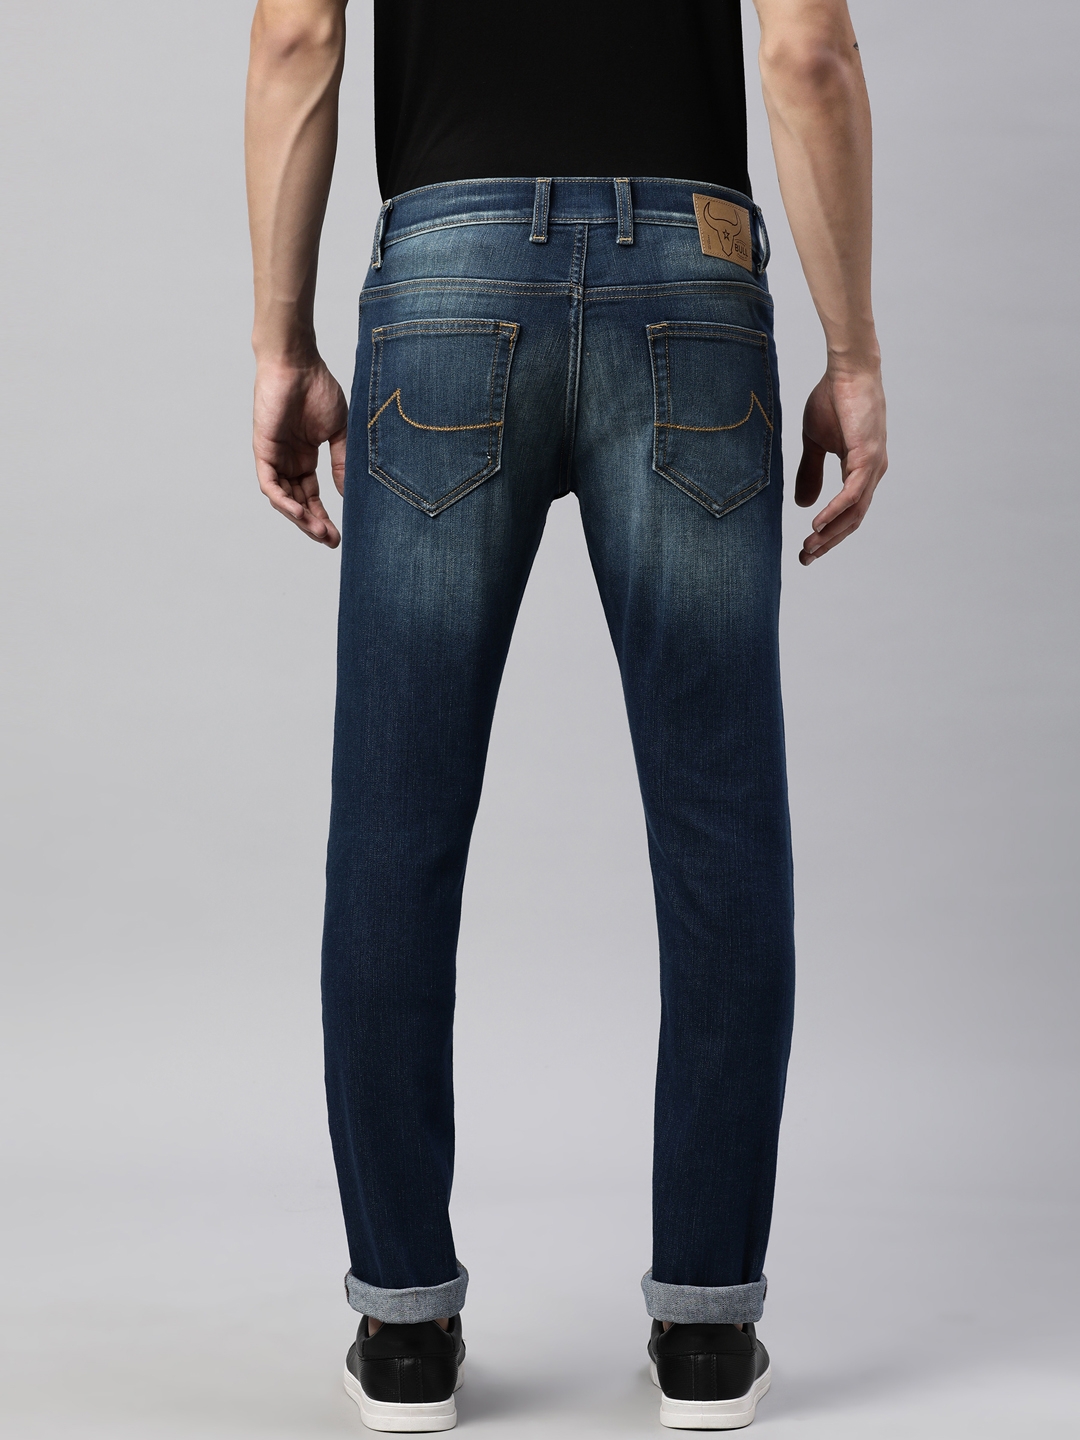 American Bull | American Bull Mens Solid Full length Denim Jeans 1